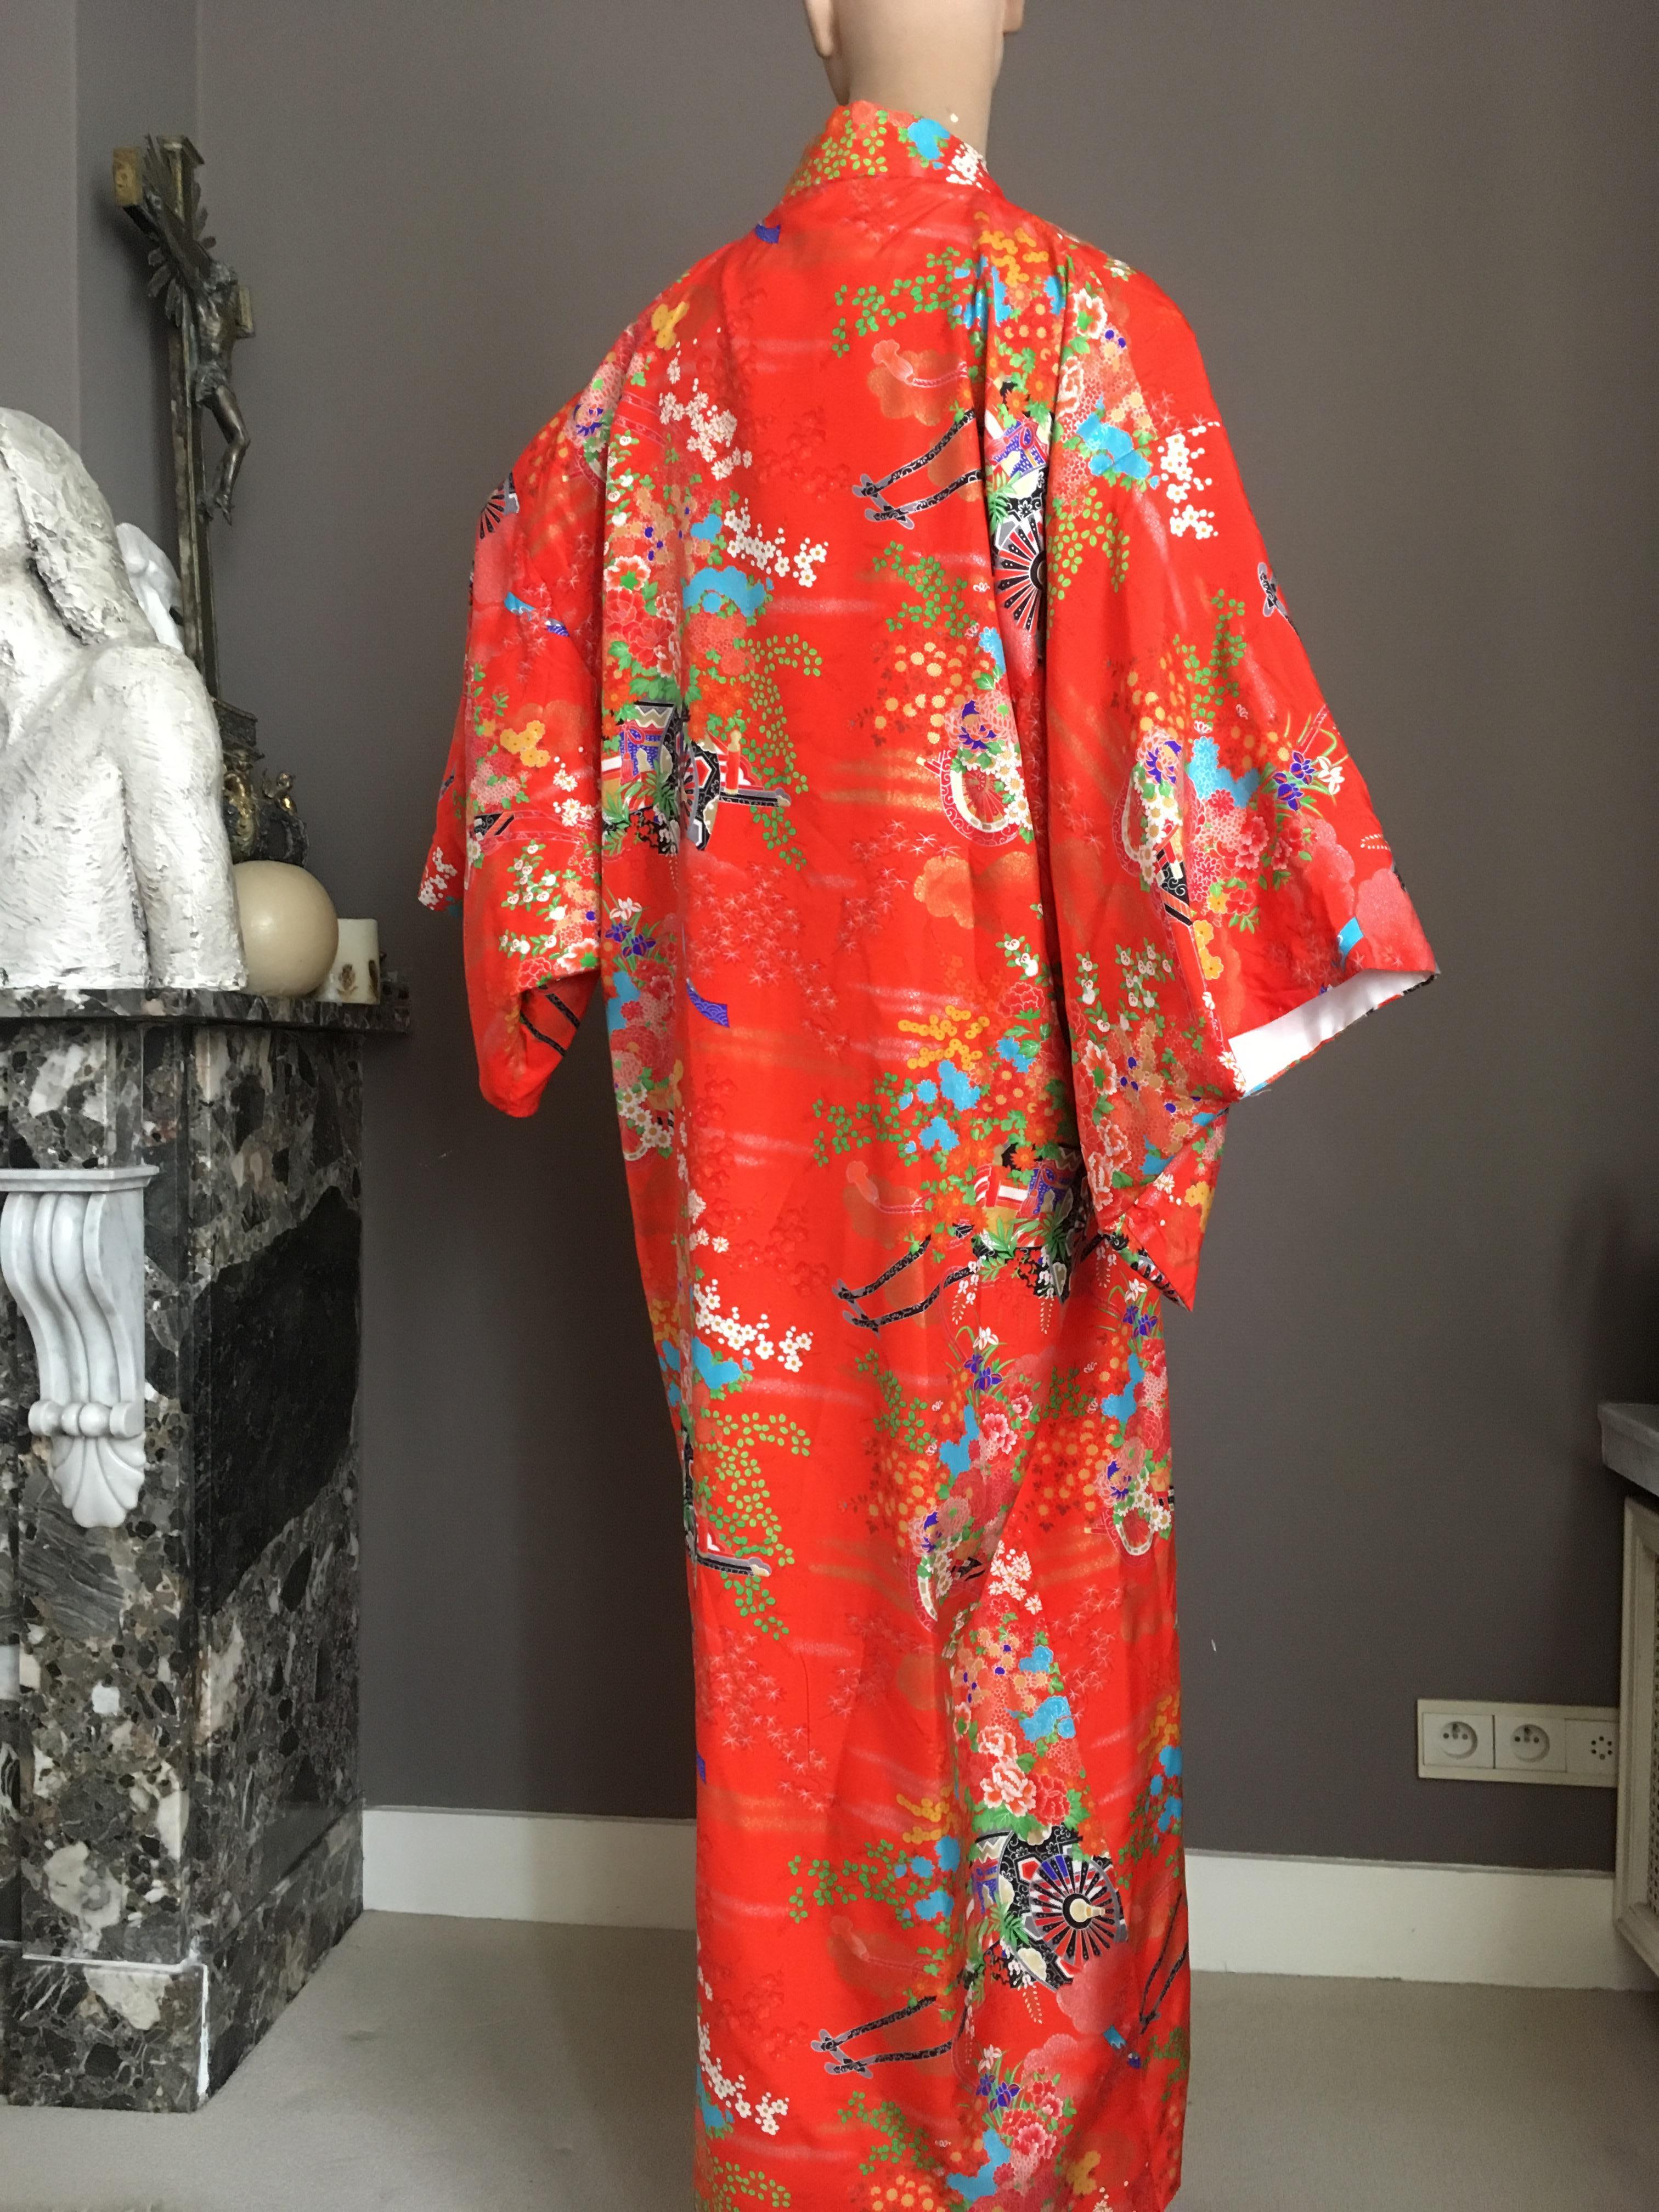 Women's or Men's Ichiban Open Kimono Robe Red & Orange, Japan , 1960s For Sale